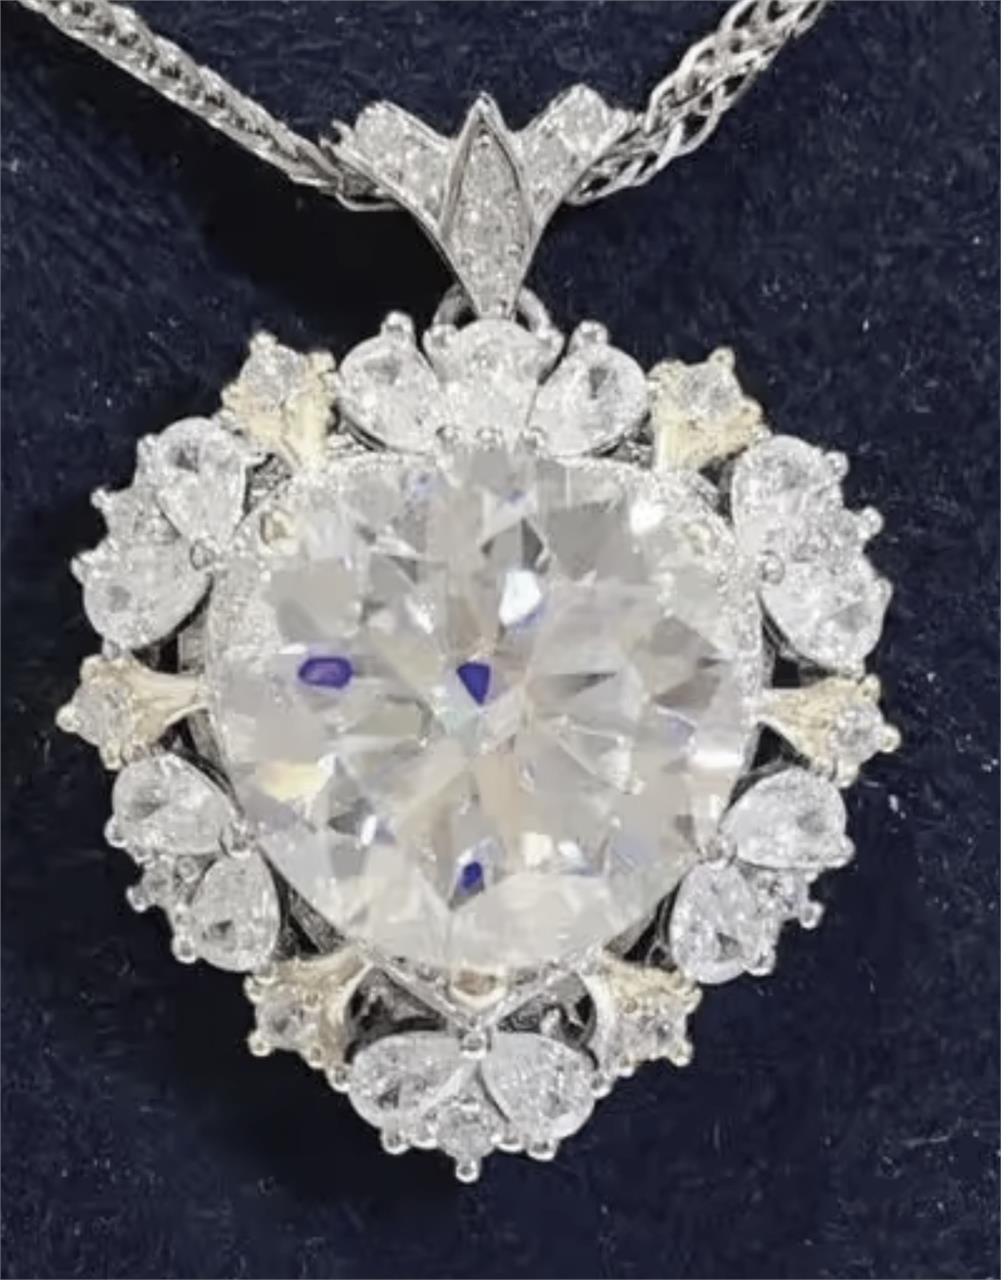 925S 5.0ct Moissanite Diamond Necklace